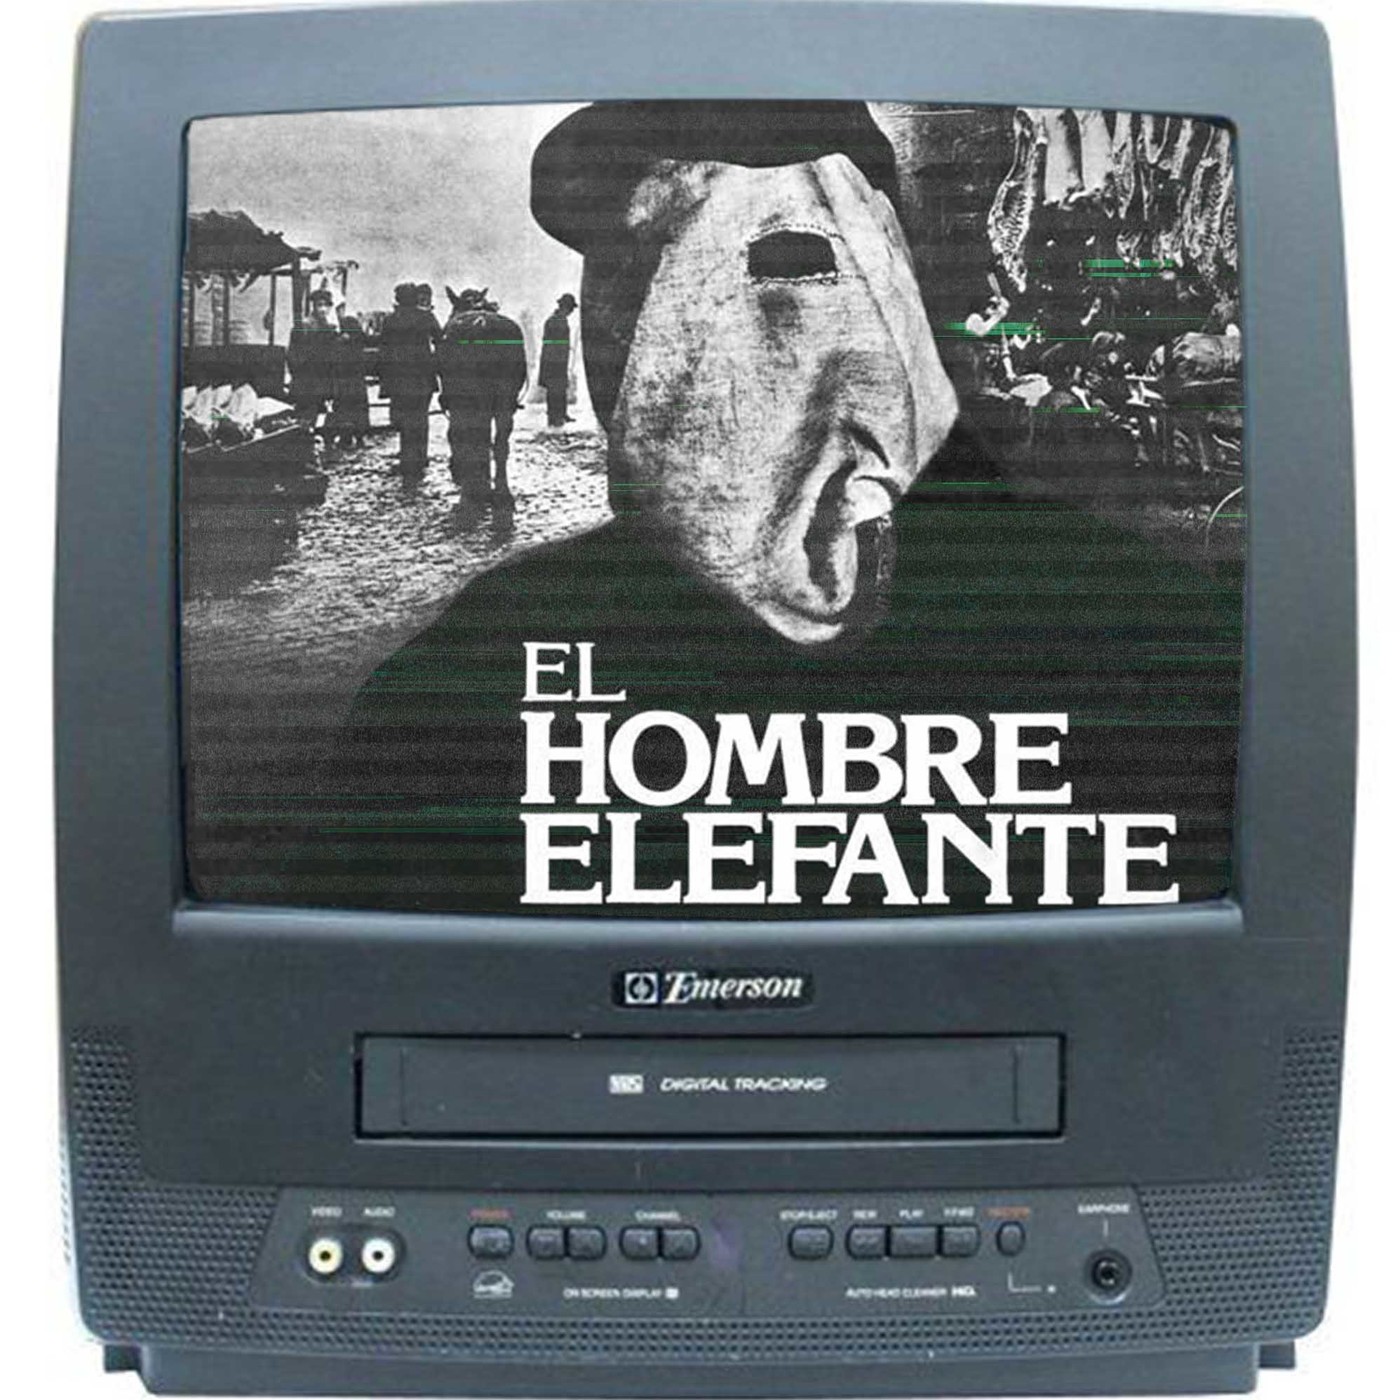 03x06 Remake a los 80 'El Hombre Elefante' 1981 -David Lynch